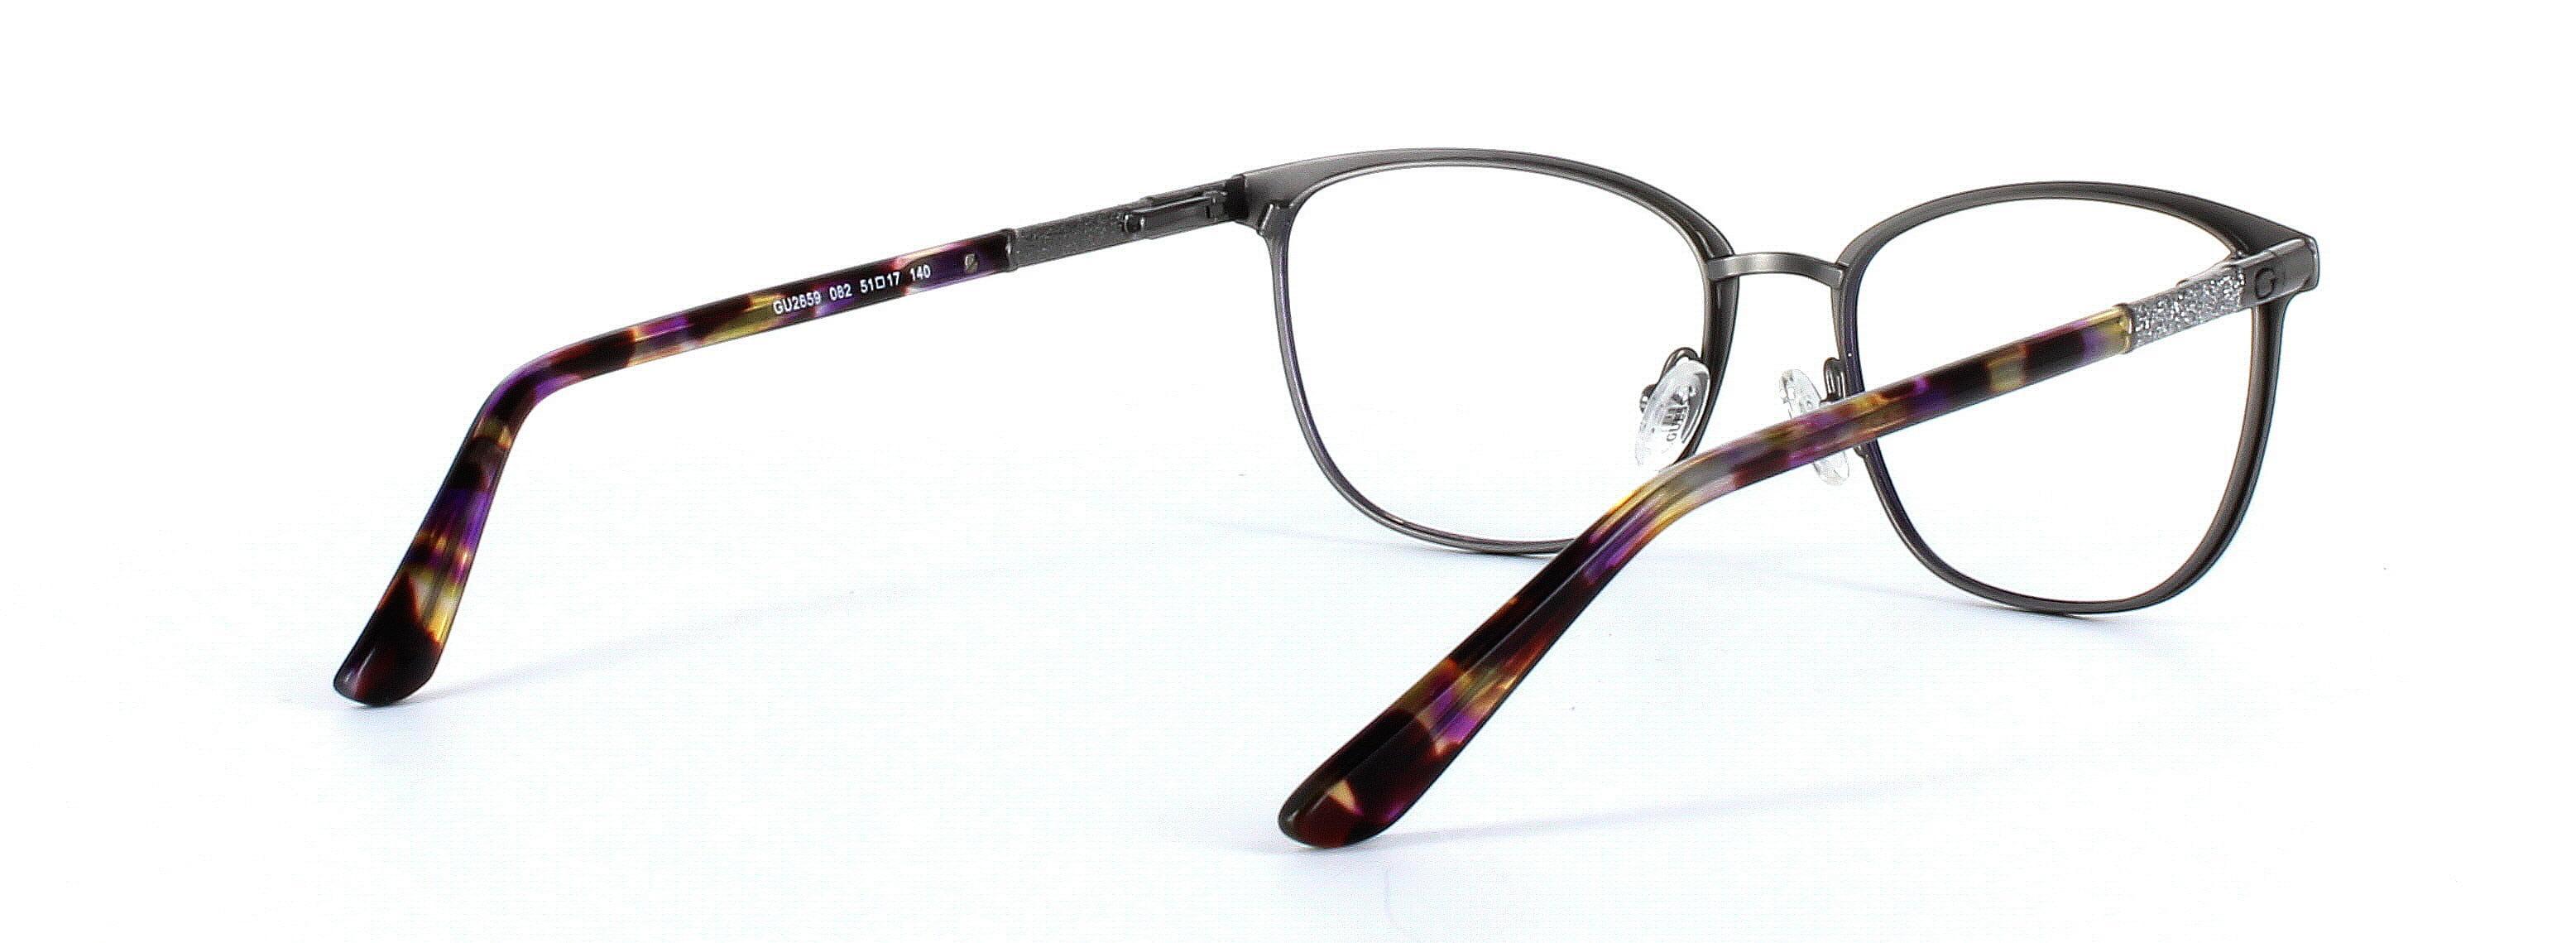 GUESS (GU2659-082) Purple Full Rim Oval Metal Glasses - Image View 4